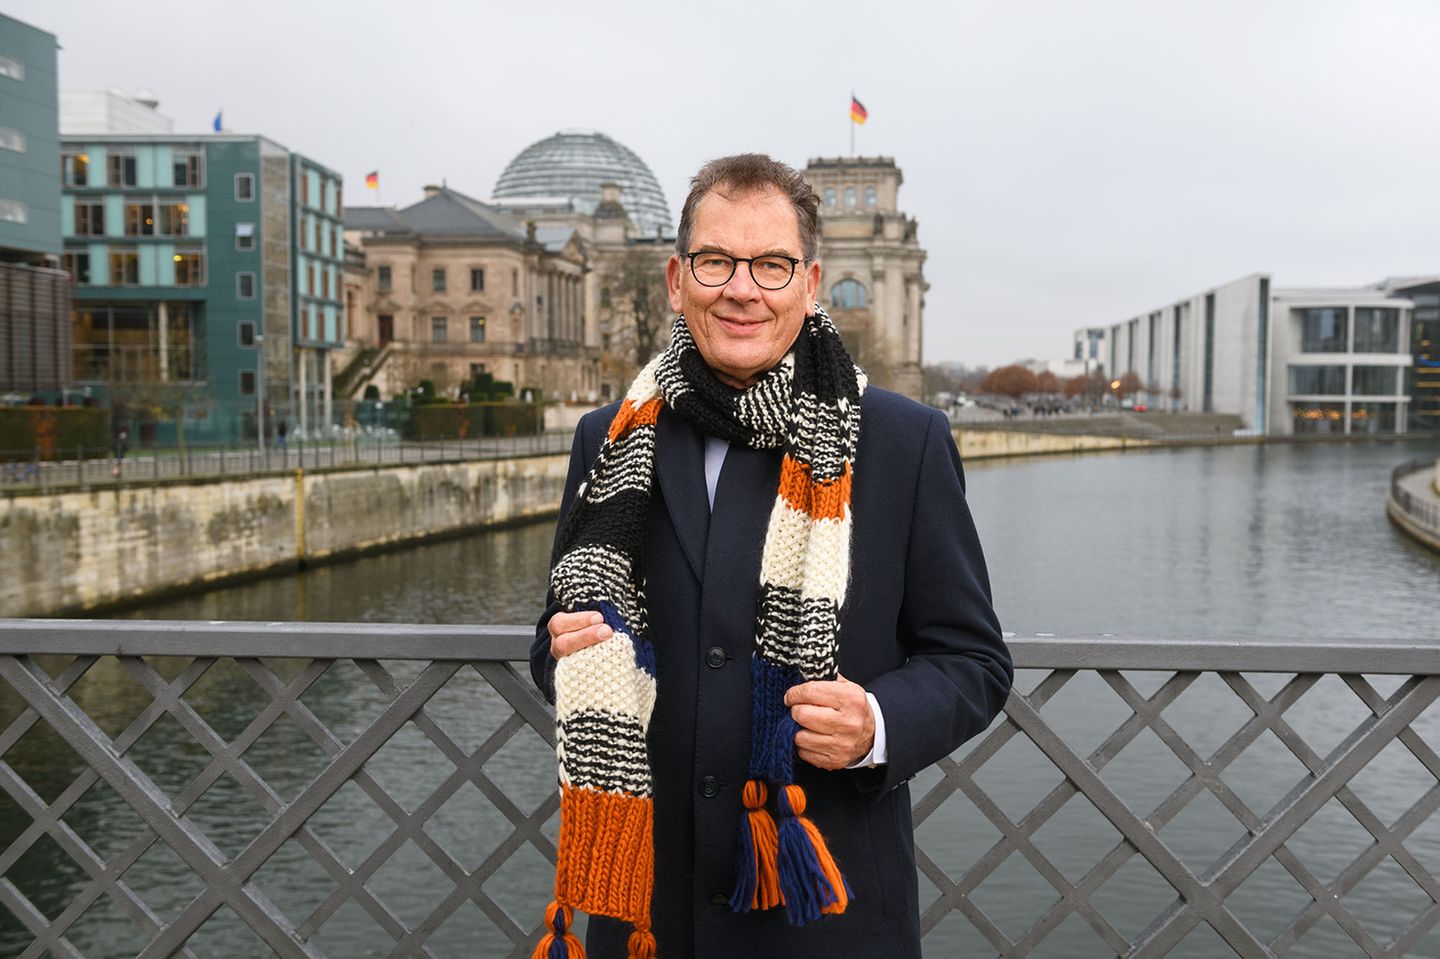 Promis bei "Ein Schal fürs Leben 2021": Dr. Gerd Müller